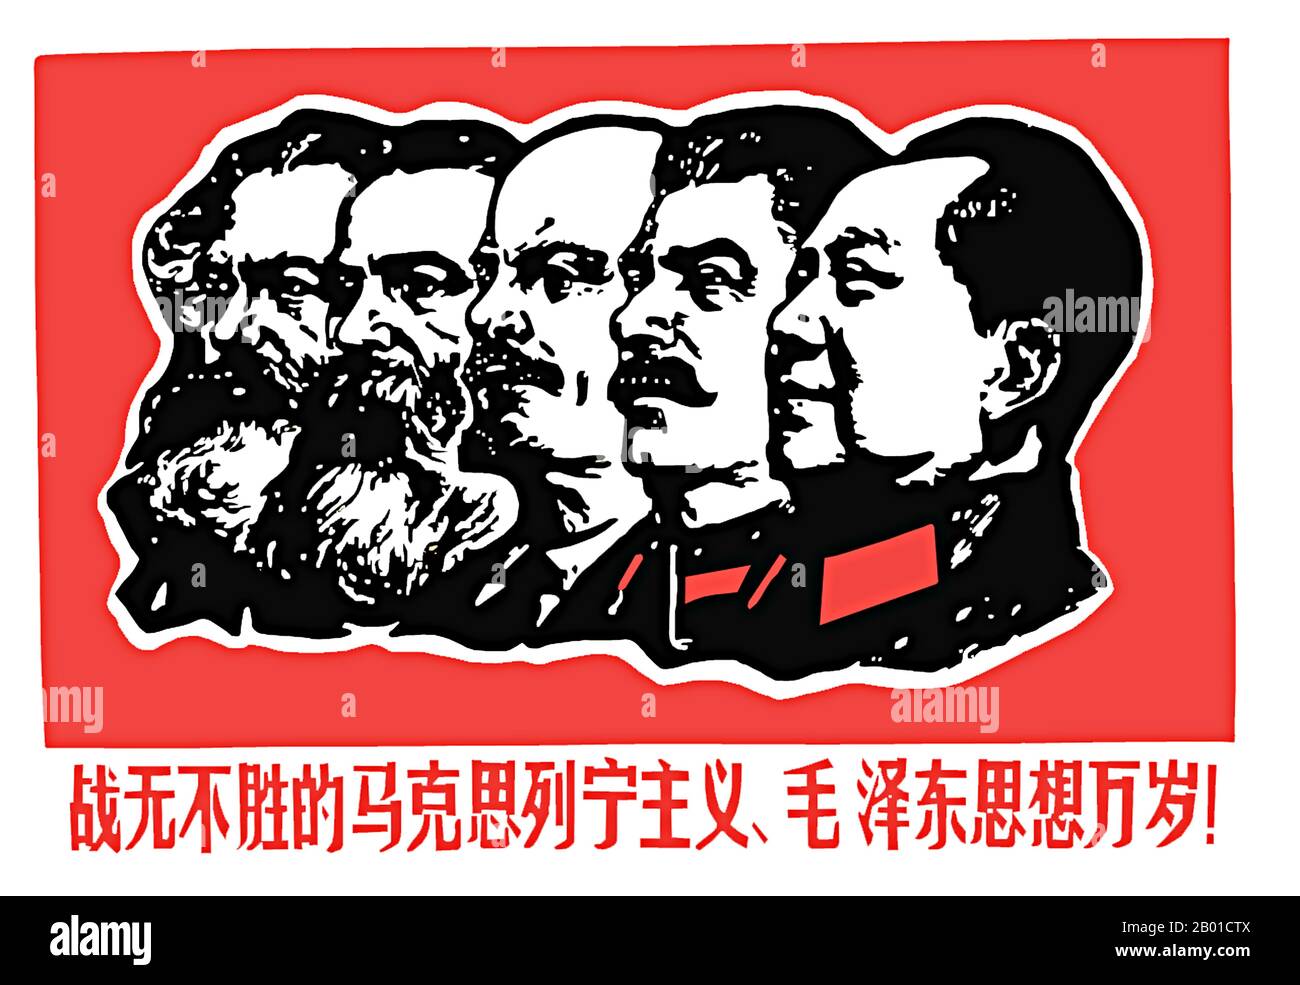 Chine: Affiche révolutionnaire "vive le marxisme invincible, le léninisme et la pensée de Mao Tsé-toung!", 1967. Une affiche révolutionnaire de la Chine communiste vers le début de la Révolution culturelle (1966-1976) présentant (de gauche à droite) : Karl Marx, Friedrich Engels, Vladimir Ilych Lénine, Joseph Staline et Mao Zedong. La pensée de 'mo Zedong', généralement raccourcie à 'maoïsme', a joué un rôle central dans la politique de la 'Grande Révolution culturelle prolétarienne' et se reflète le plus célèbre dans le 'petit Livre rouge'. Banque D'Images